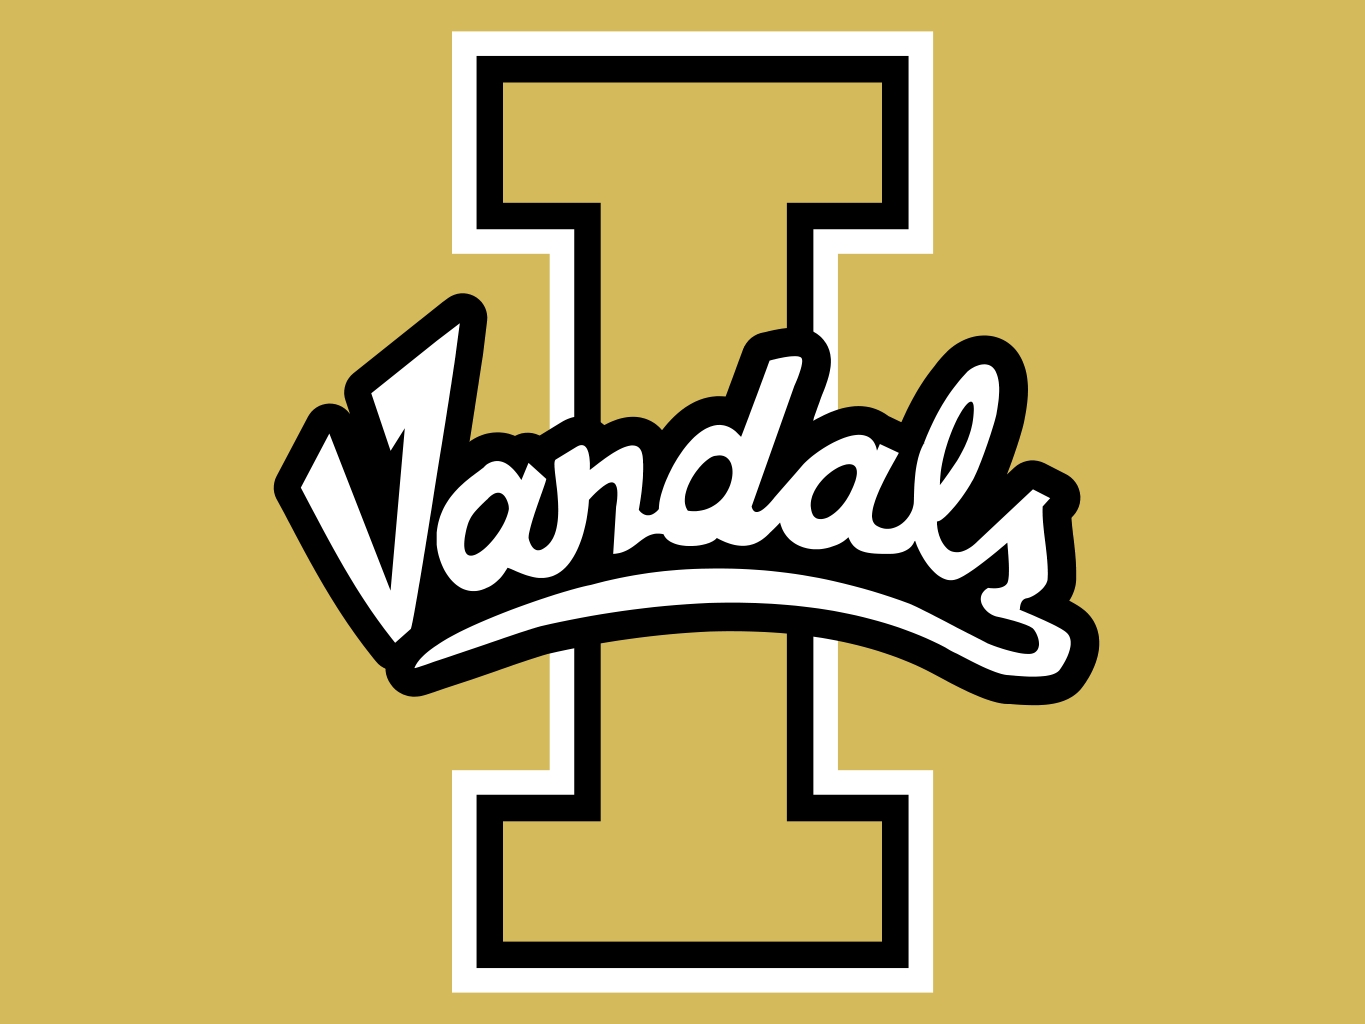 Idaho Vandals | NCAA Football Wiki | FANDOM powered by Wikia